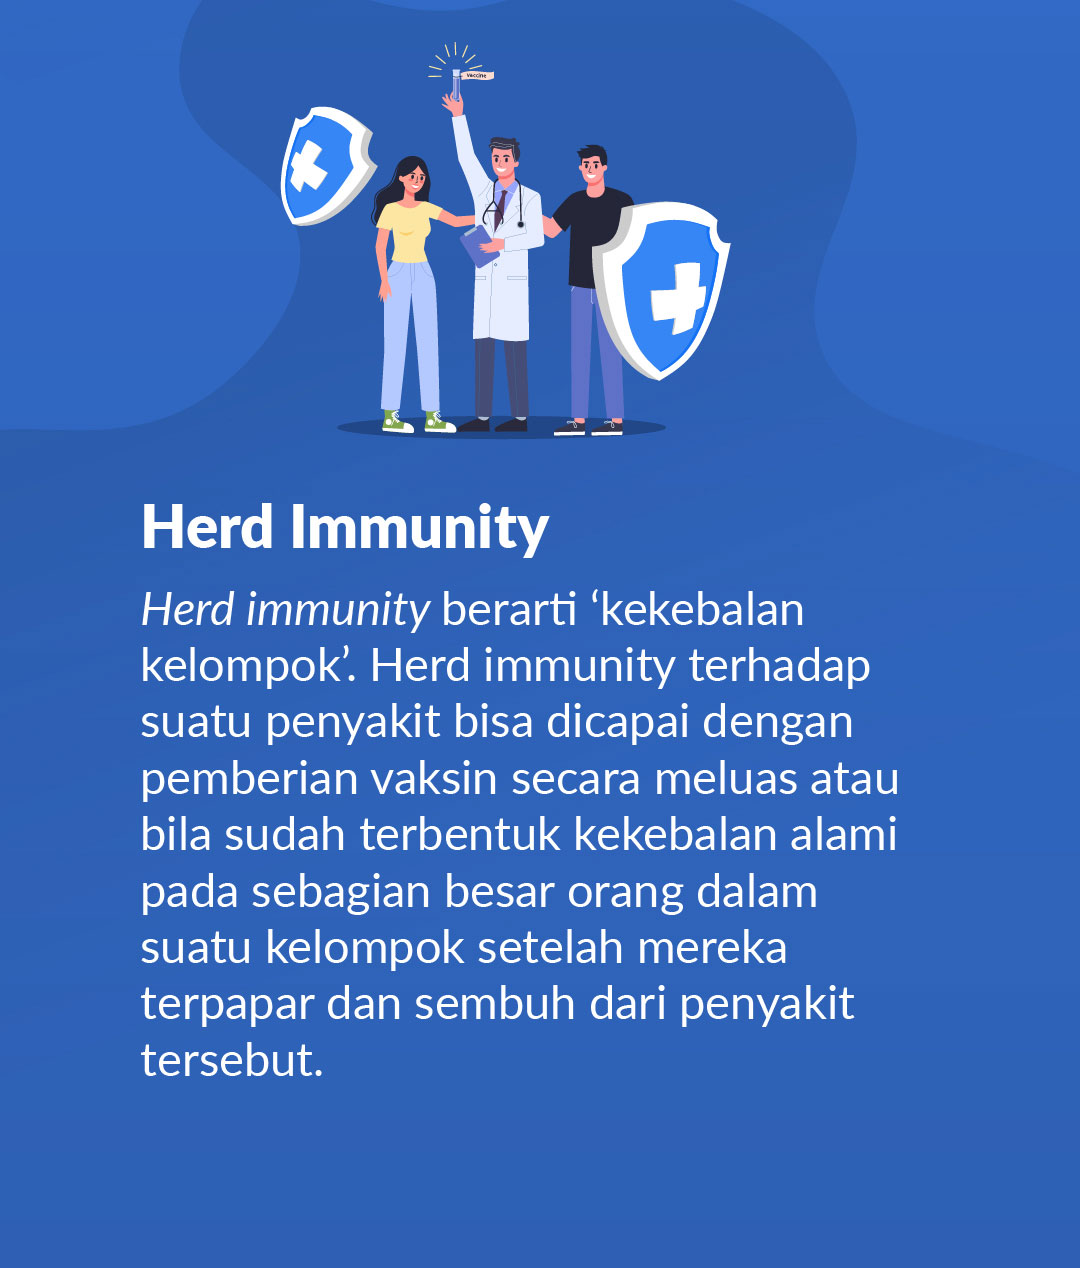 8 - Herd Immunity - COVID-19